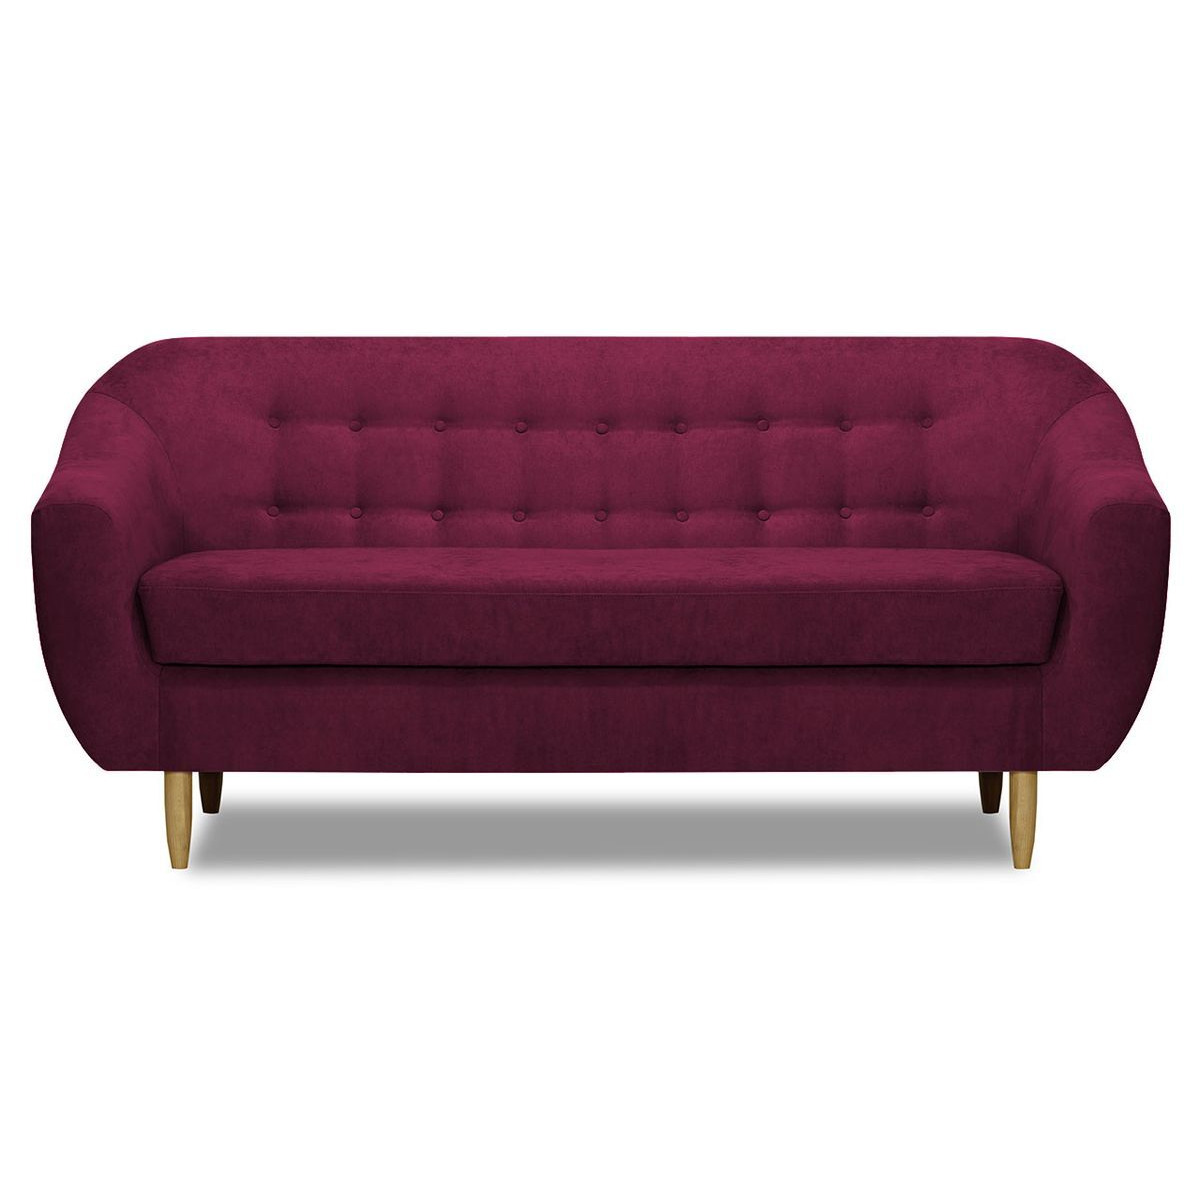 Bont 3 Seater Sofa, dark pink - image 1